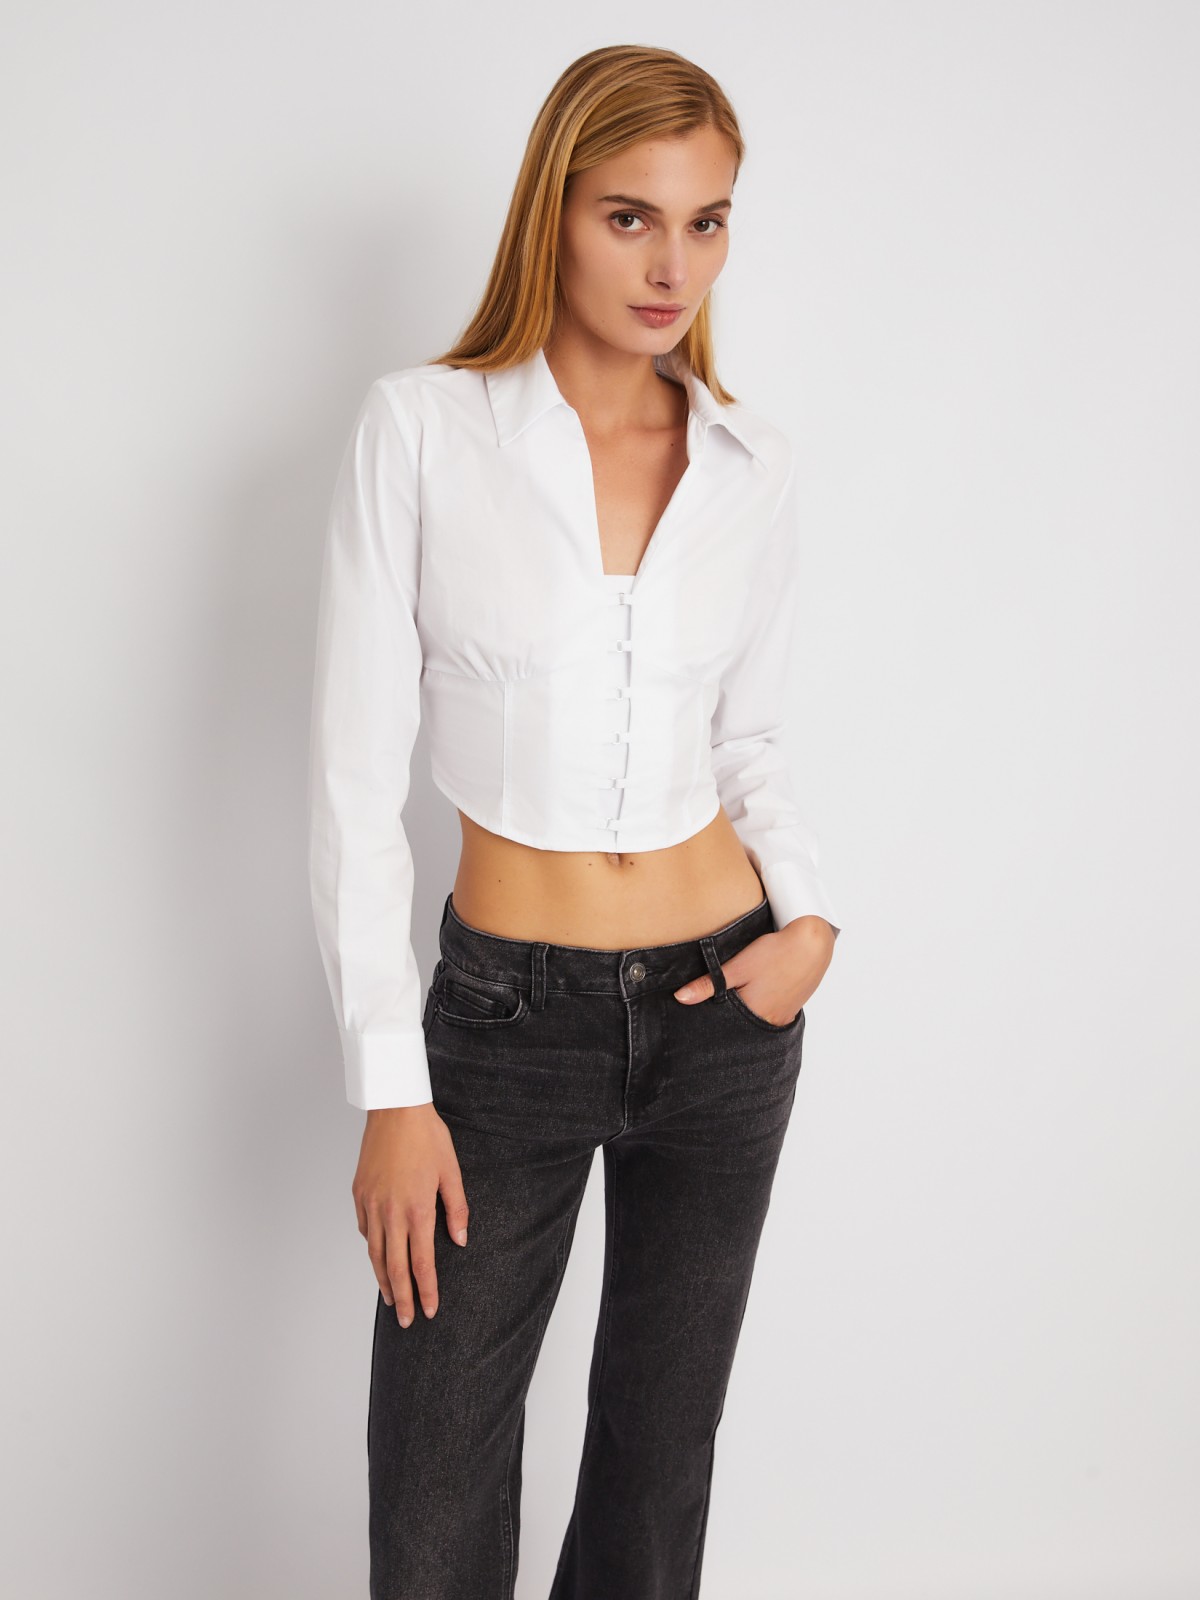 Укороченный топ-рубашка с имитацией корсета zolla 024111159271, цвет белый, размер XS - фото 1